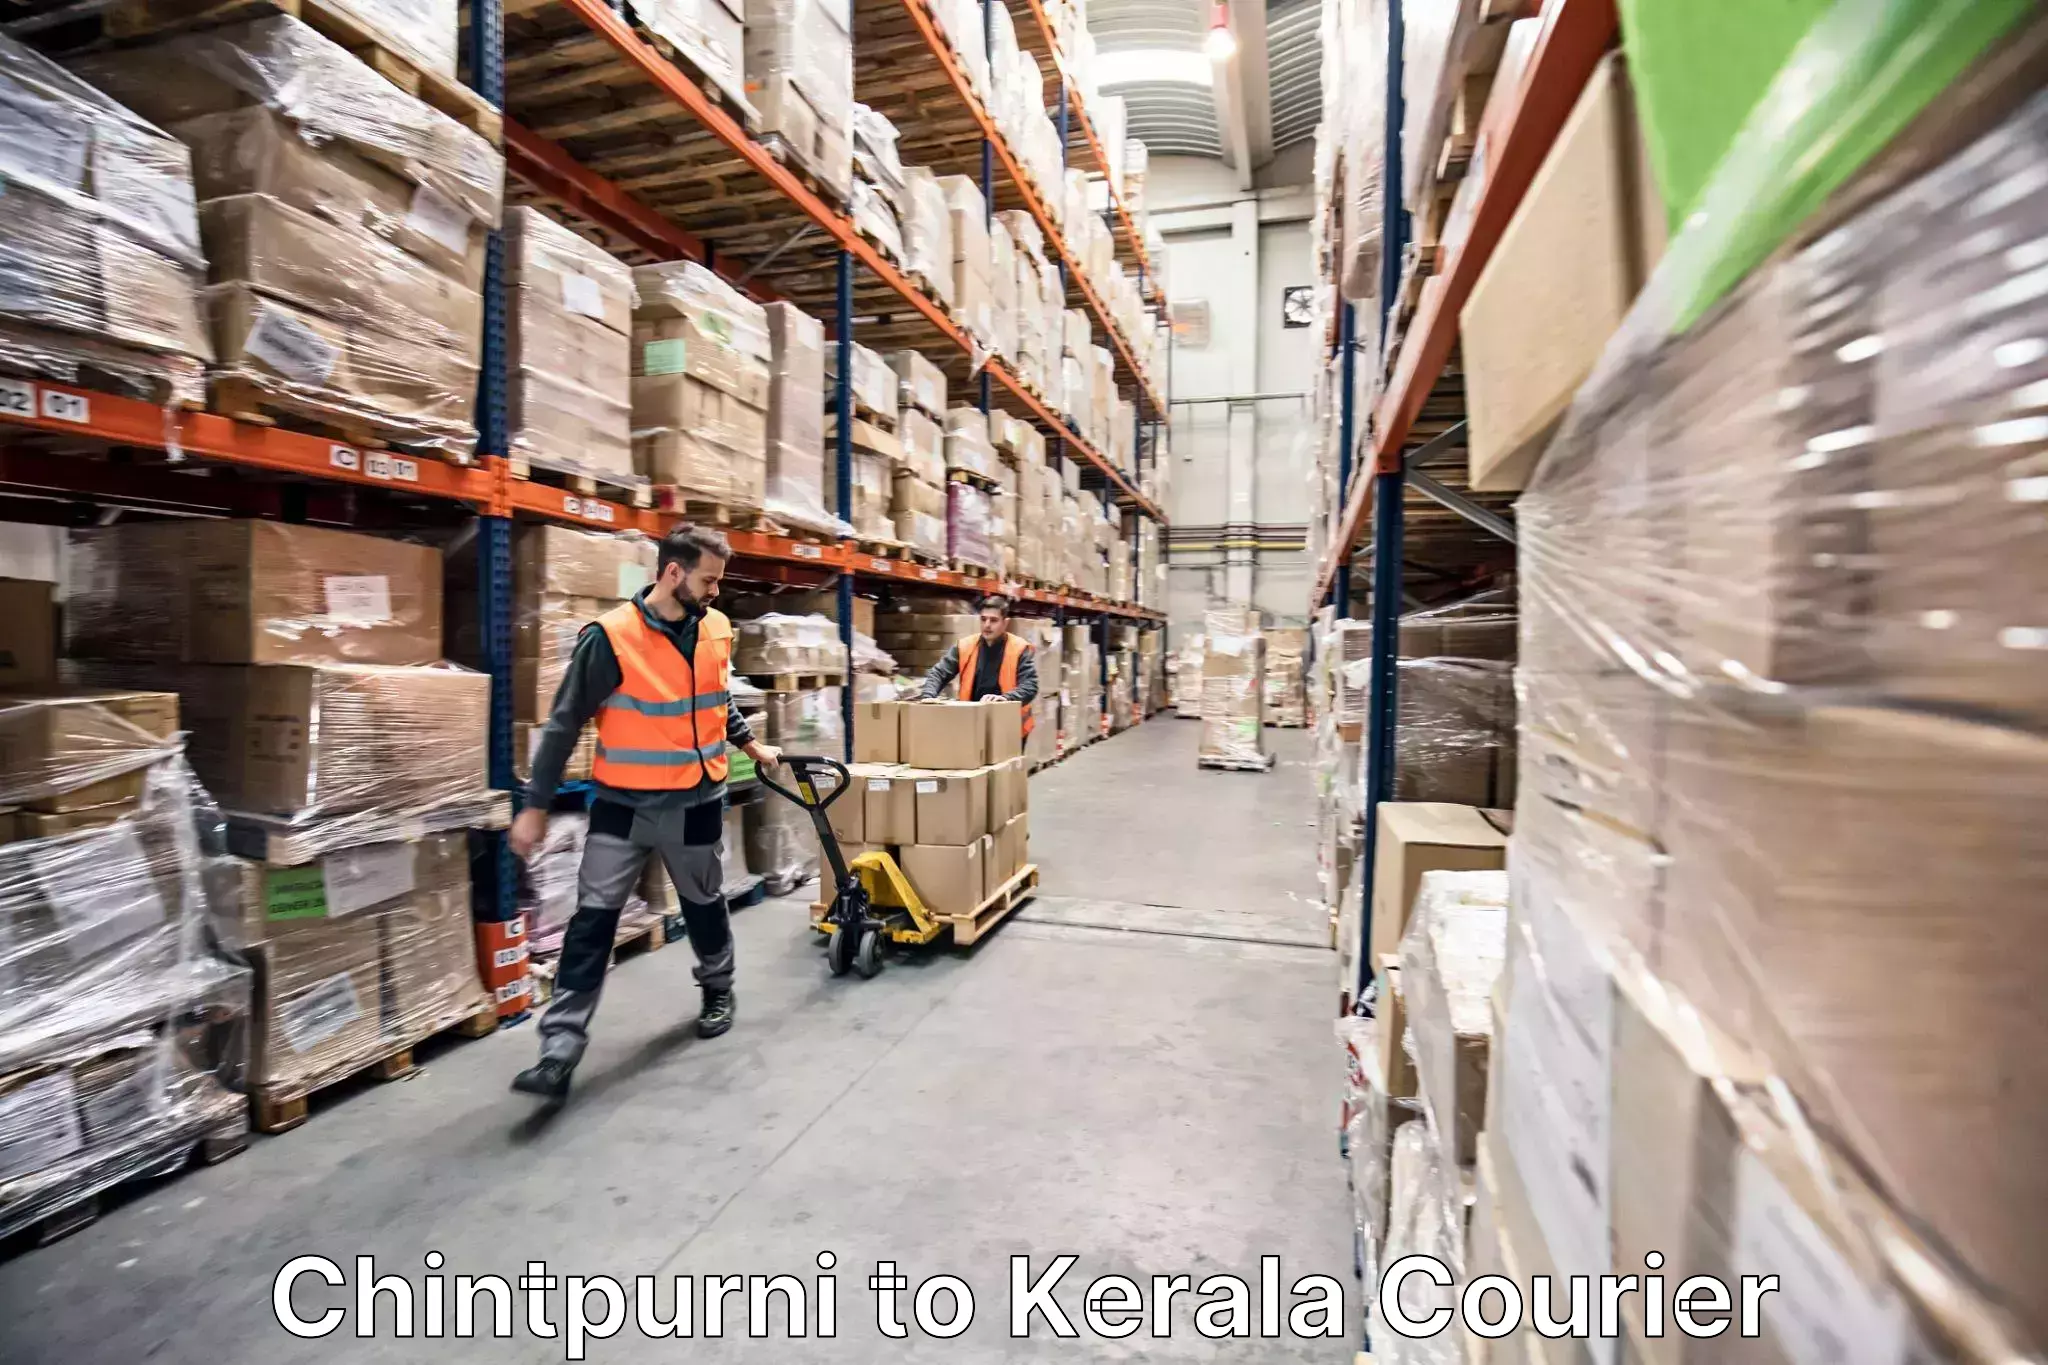 Expert goods movers Chintpurni to Thiruvananthapuram